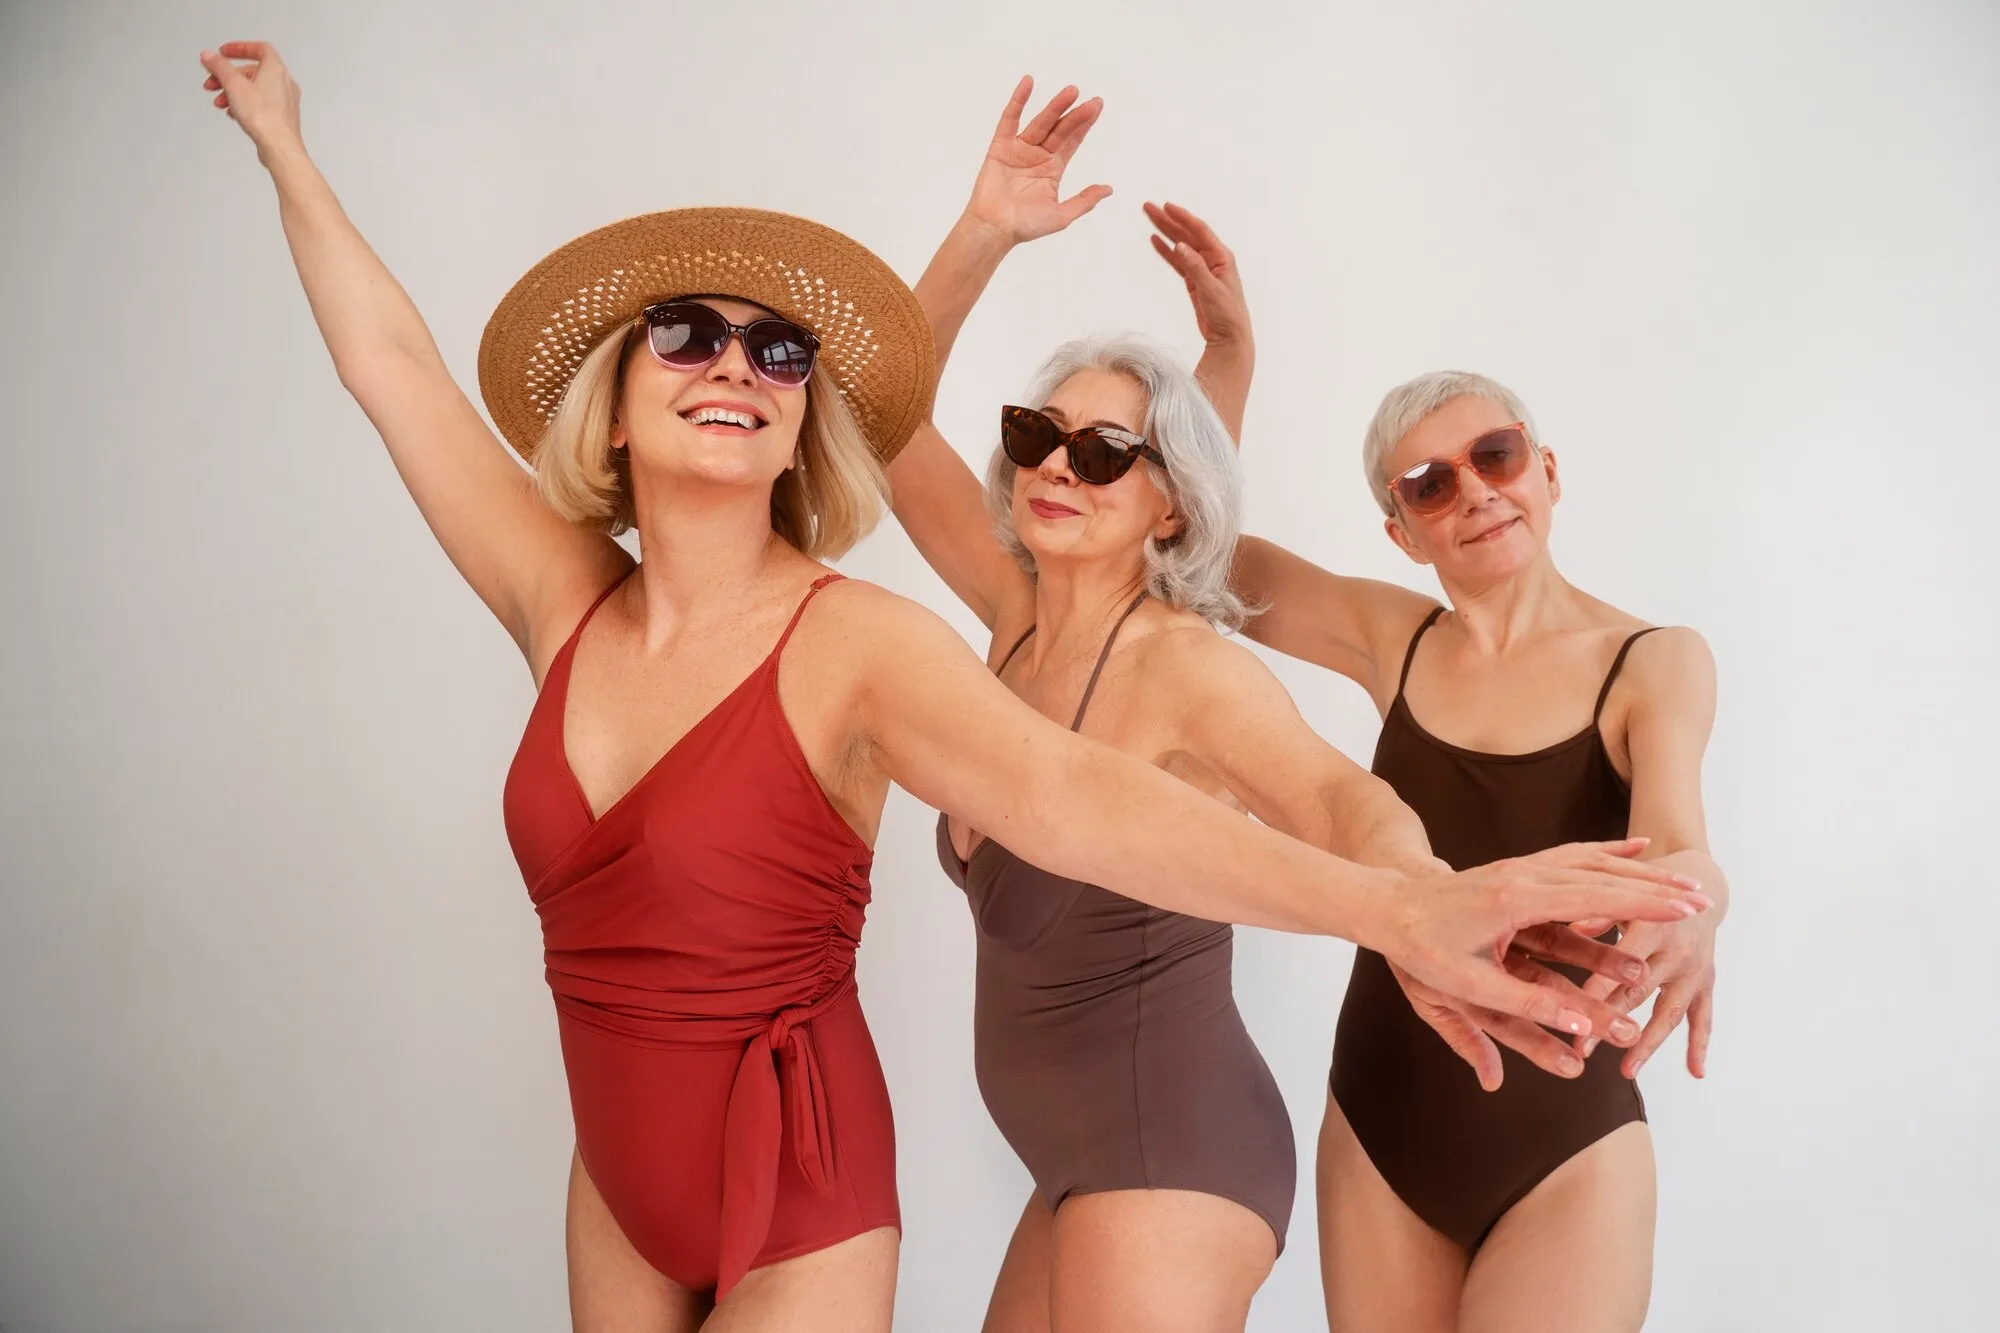 Стилист назвала запрещённые модели купальников для женщин старше 50 лет